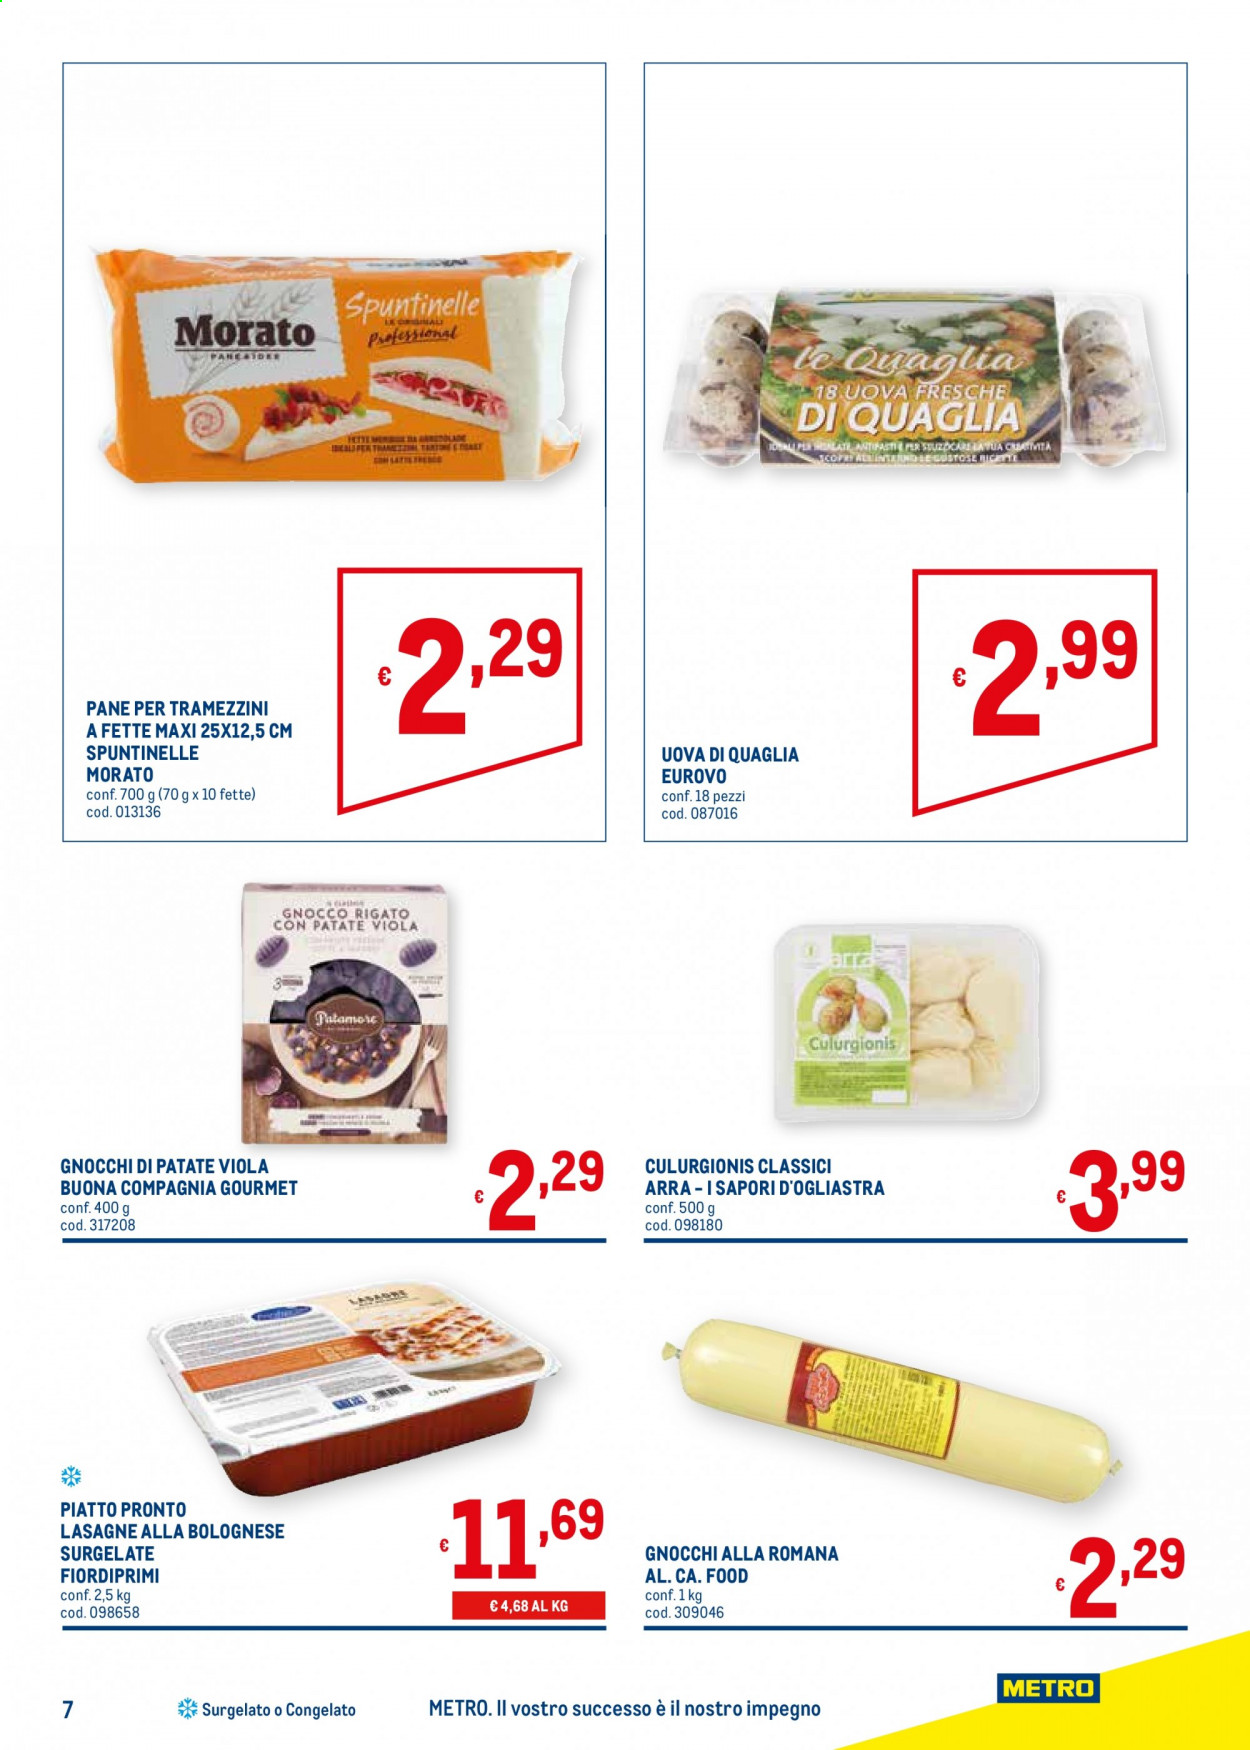 thumbnail - Volantino Metro - 25/3/2021 - 21/4/2021 - Prodotti in offerta - Morato, pane, pane per tramezzini, lasagne, lasagne alla bolognese, uova, uova di quaglia, gnocchi. Pagina 7.